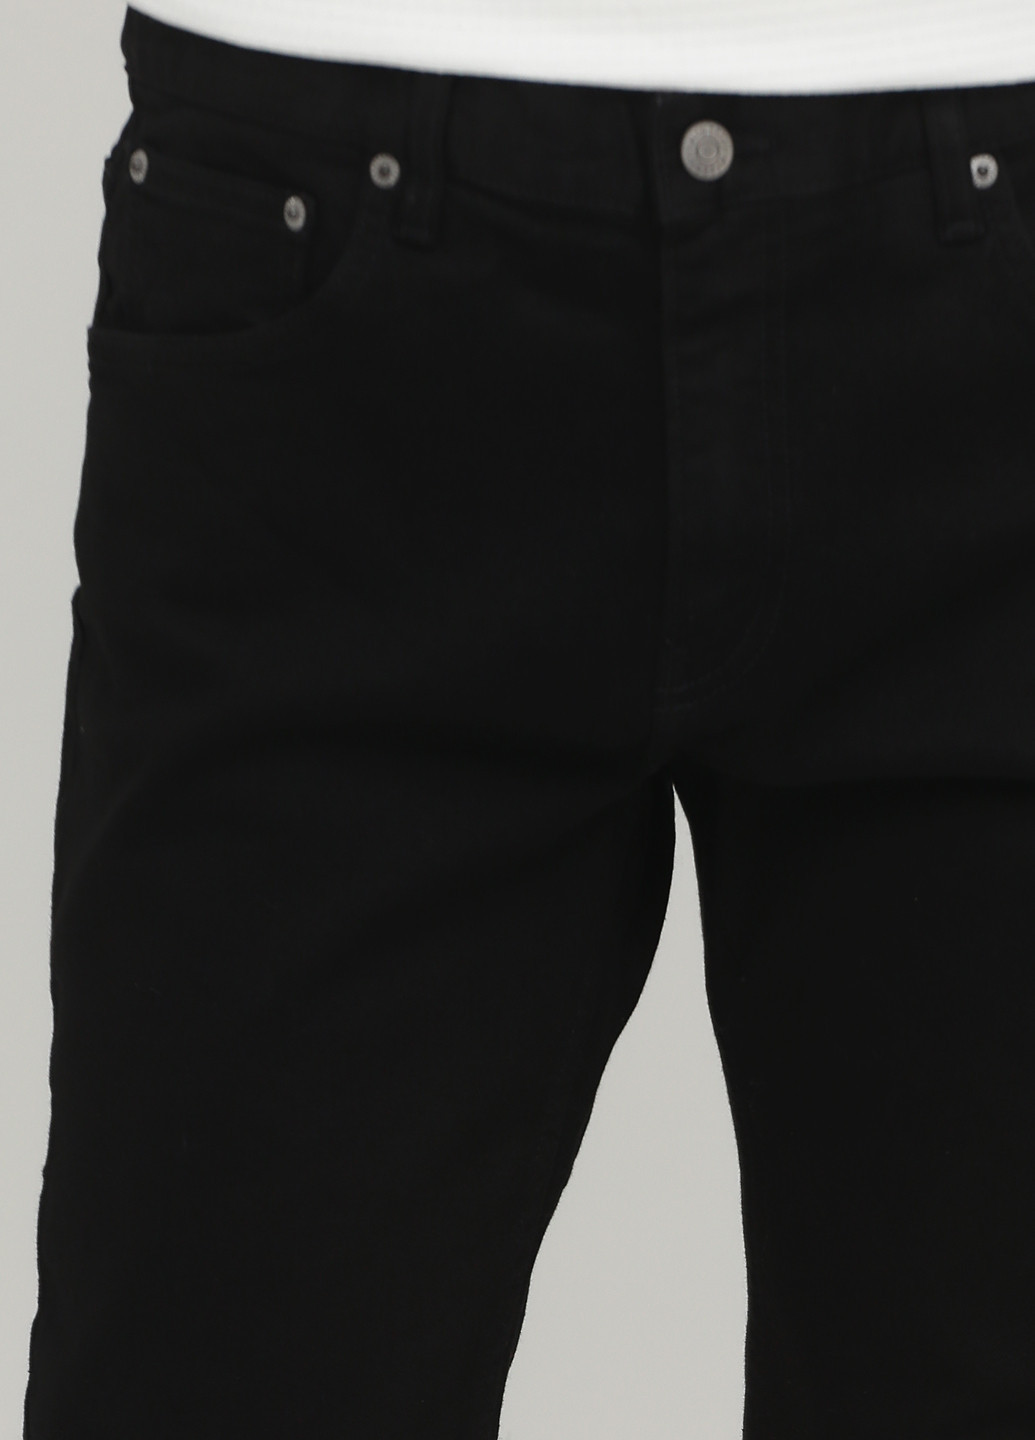 Черные демисезонные джинсы Weekday